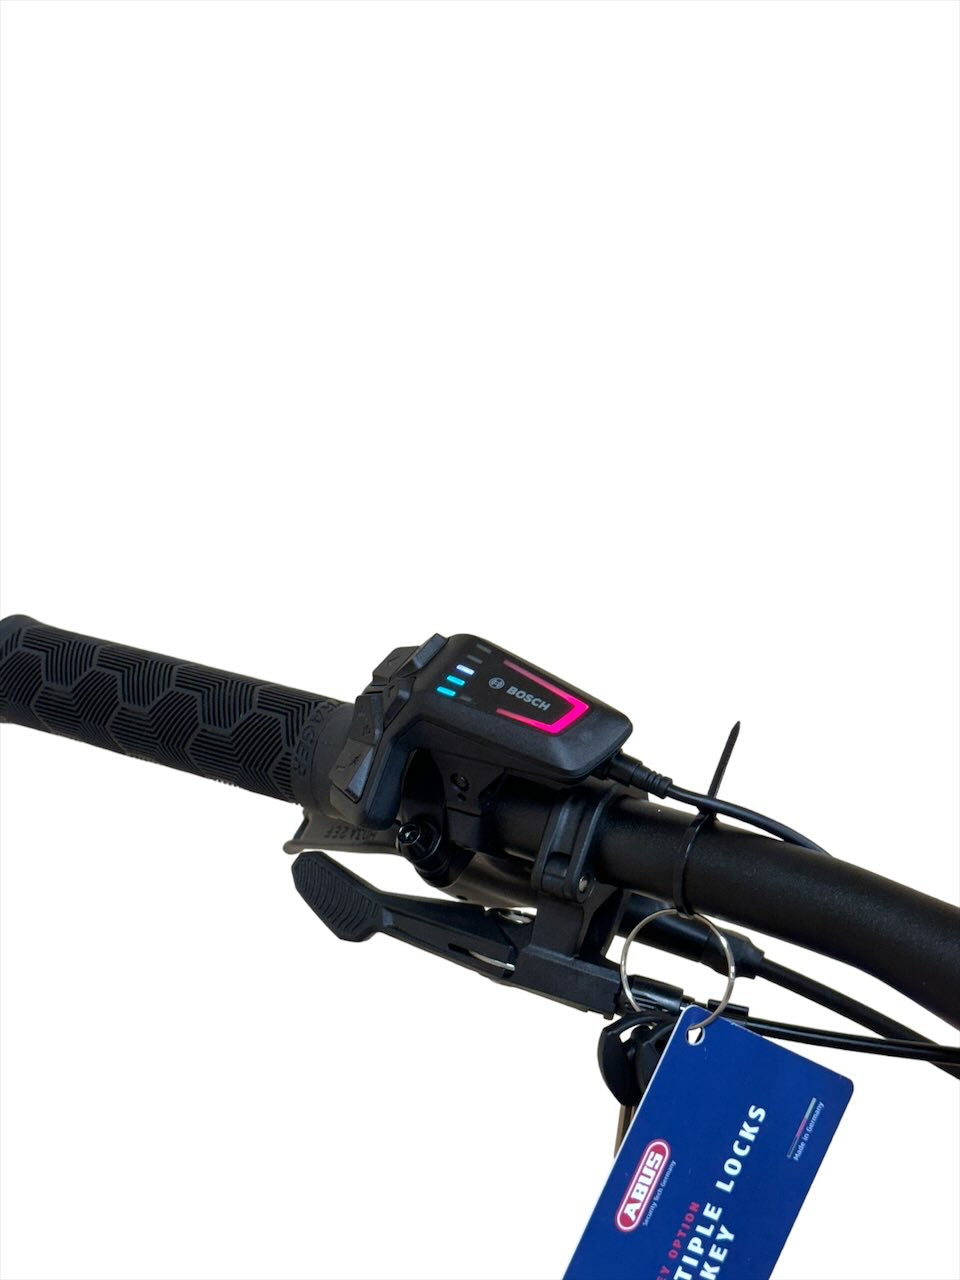 <tc>Trek Rail 5 625 Gen3 29 inch Bicicletă de munte electrică</tc>